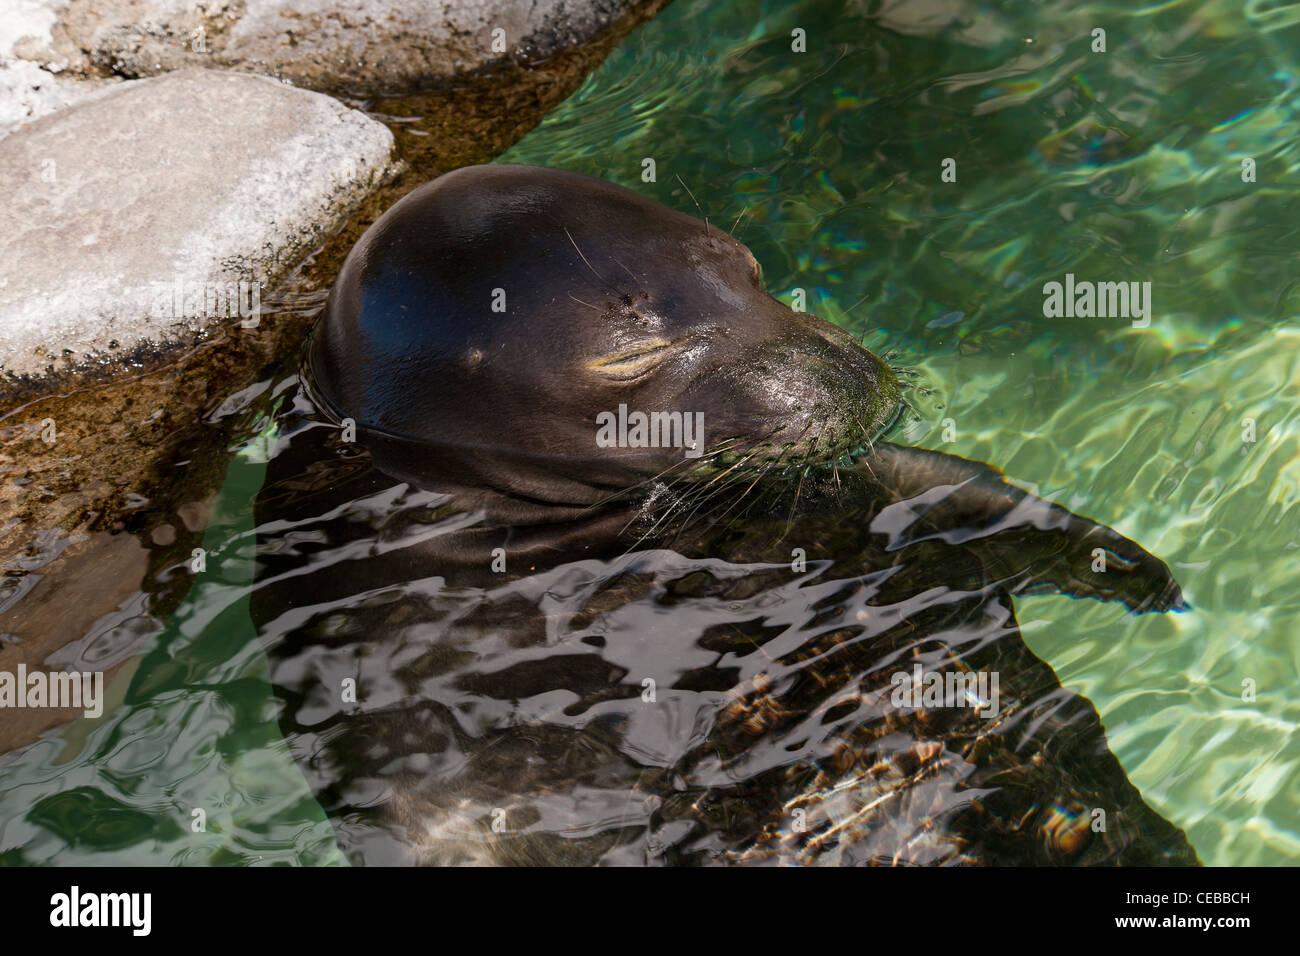 La foca monje hawaiana, Monachus schauinslandi, una especie En Peligro Crítico Foto de stock